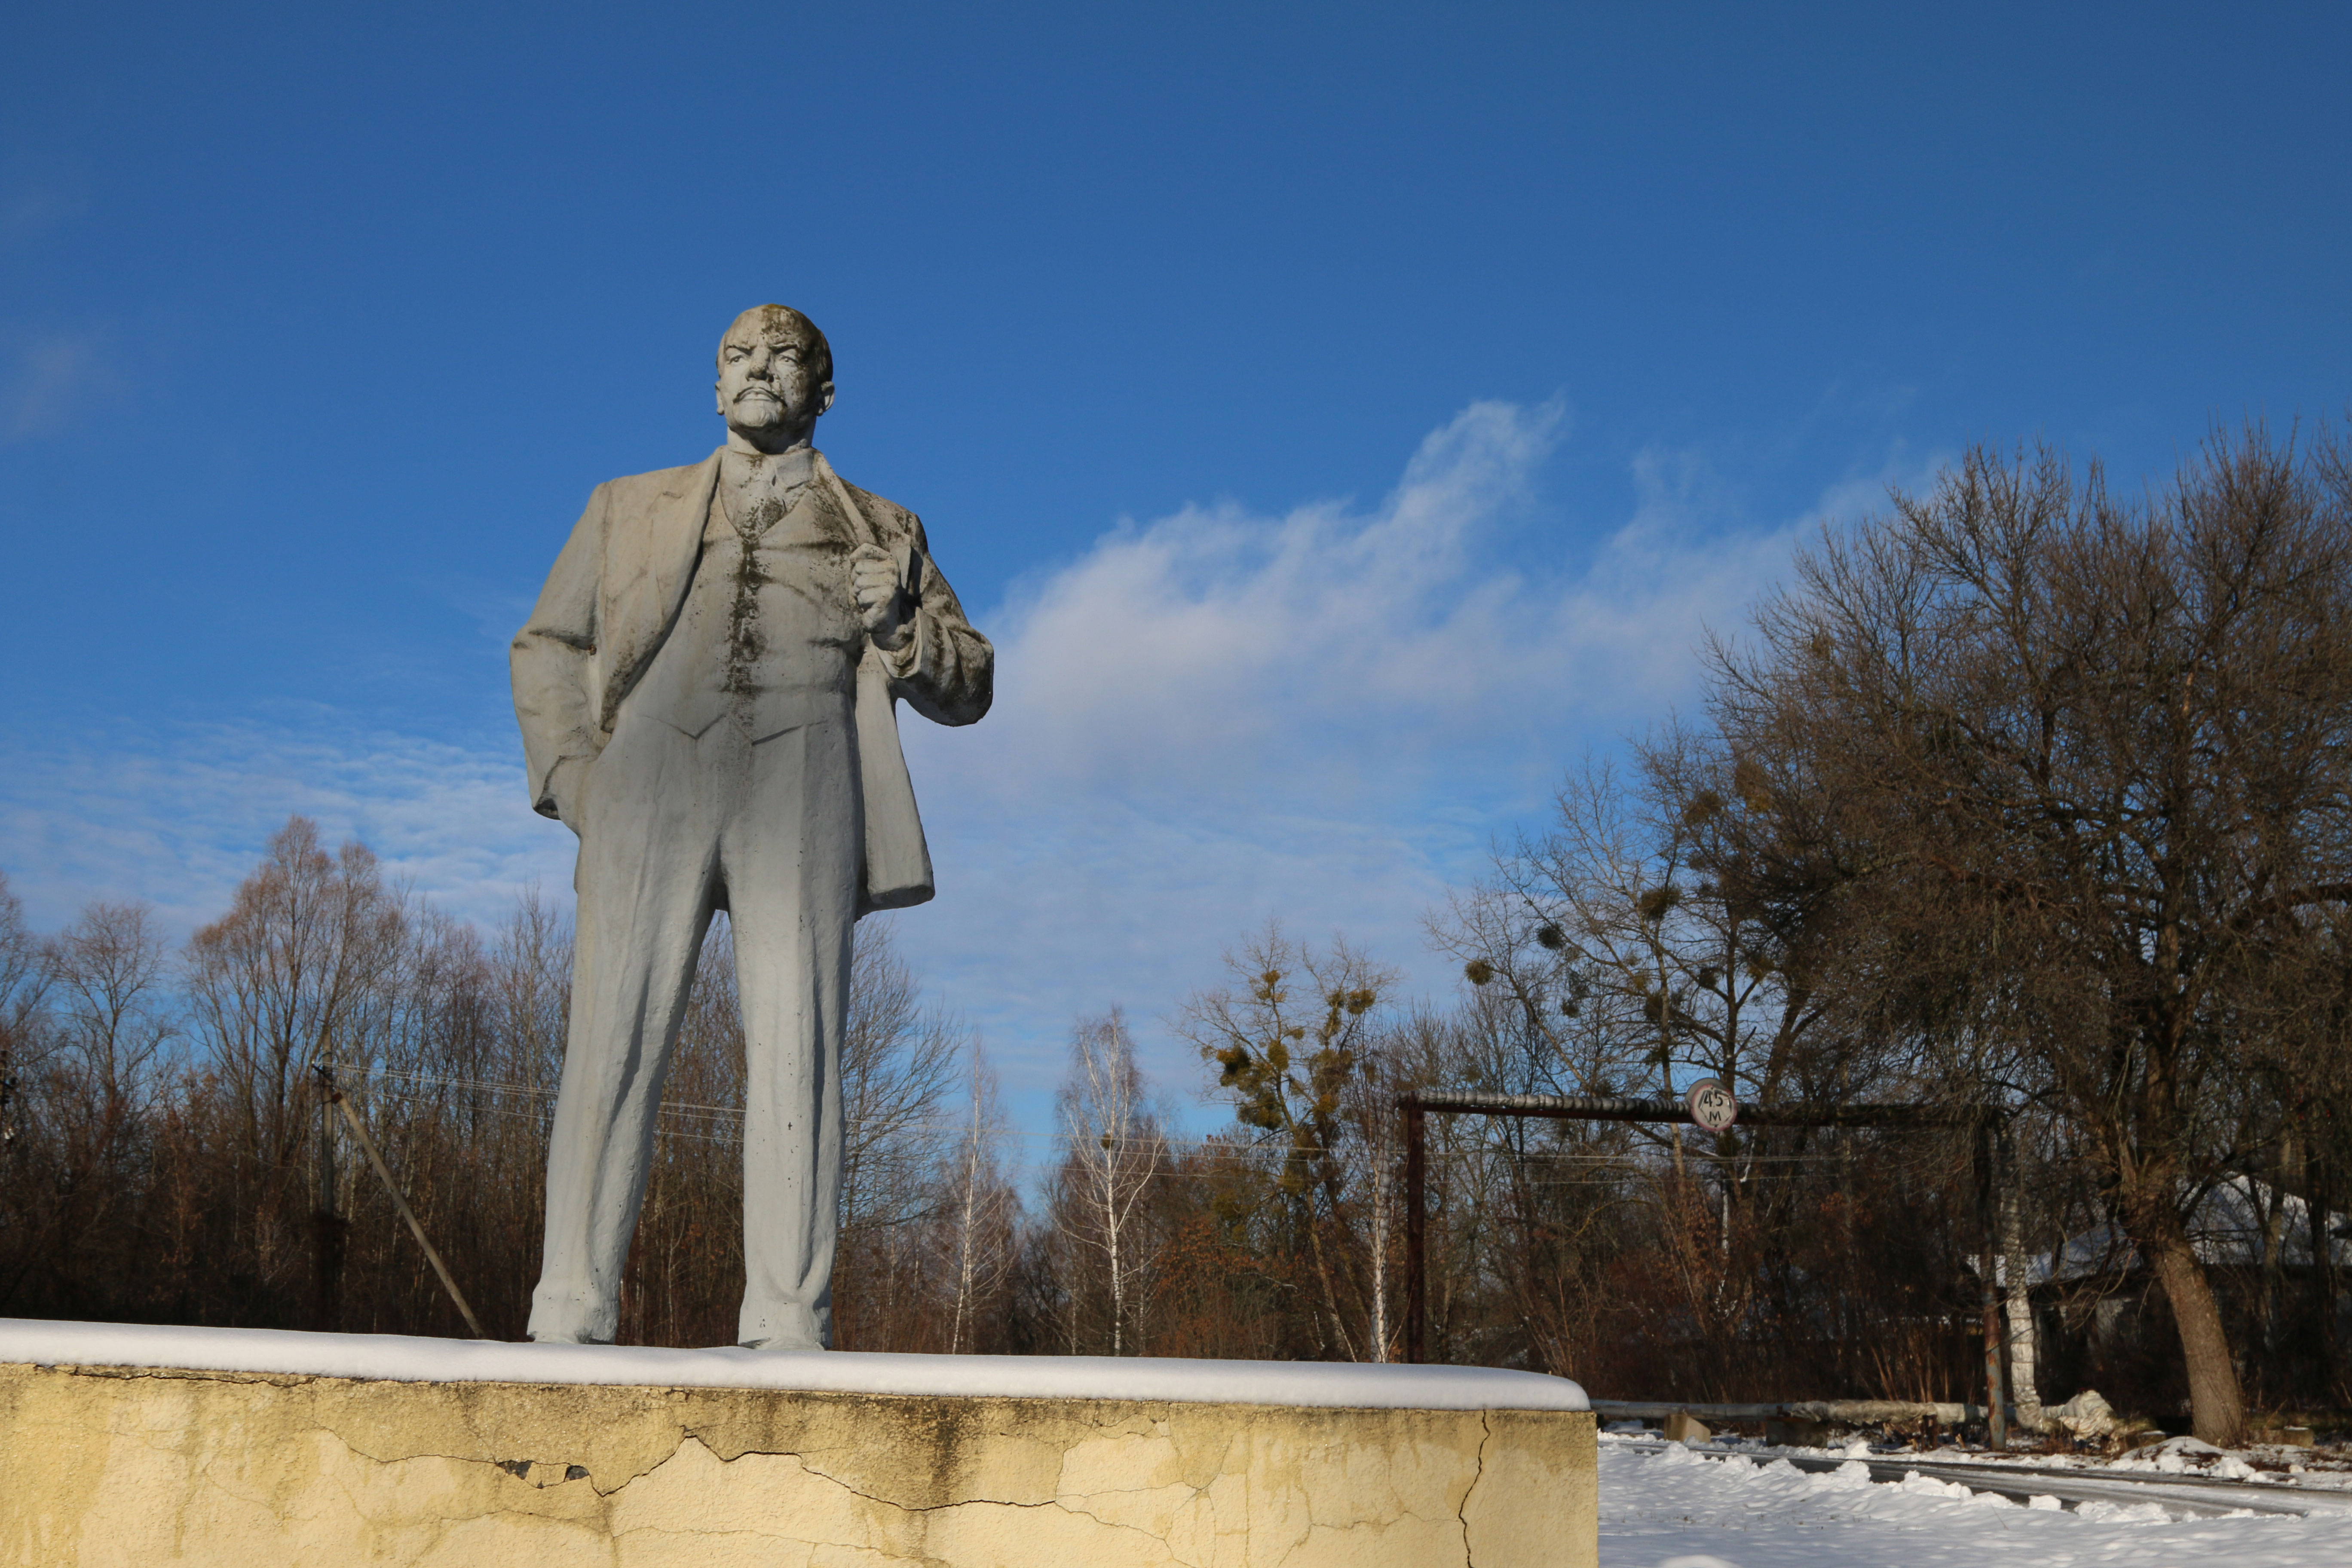 A statue of Vladimir Lenin in Chernobyl, Ukraine.